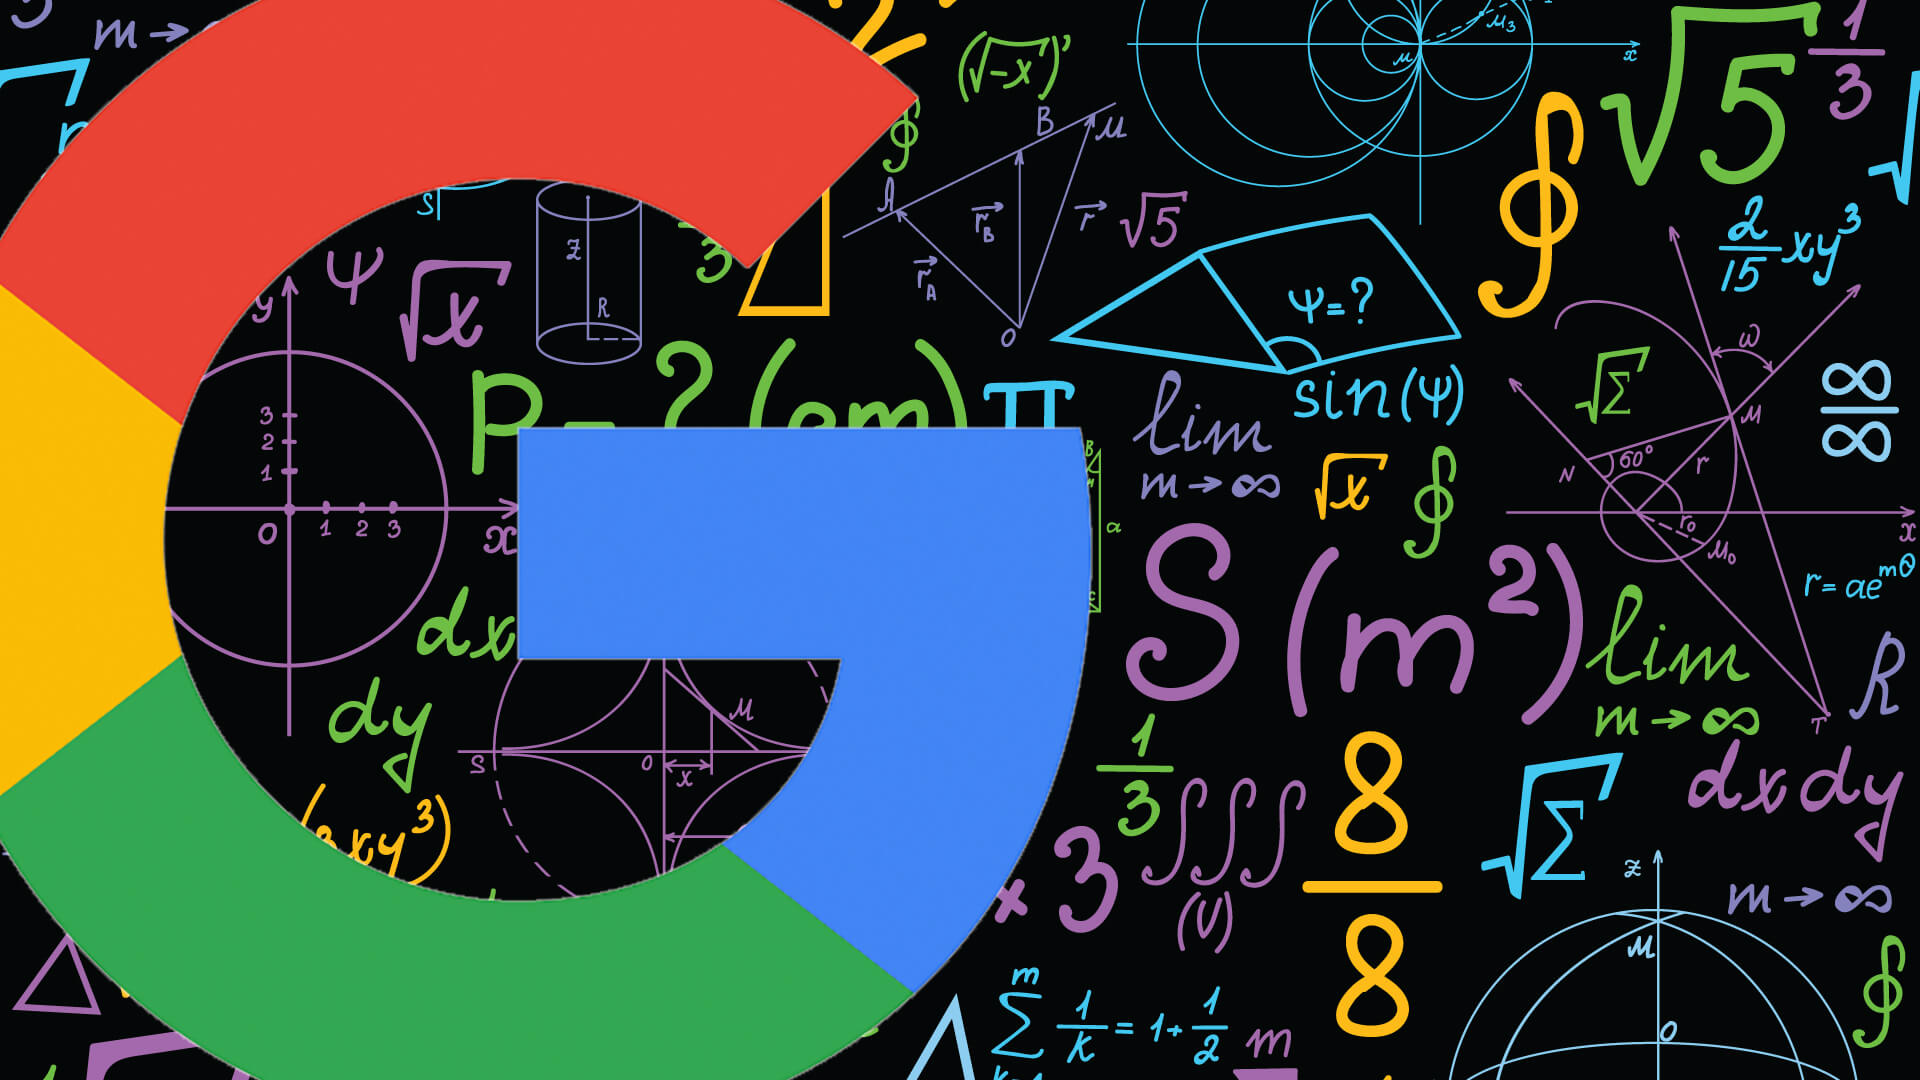 Former Googler: Google ‘using clicks in rankings’